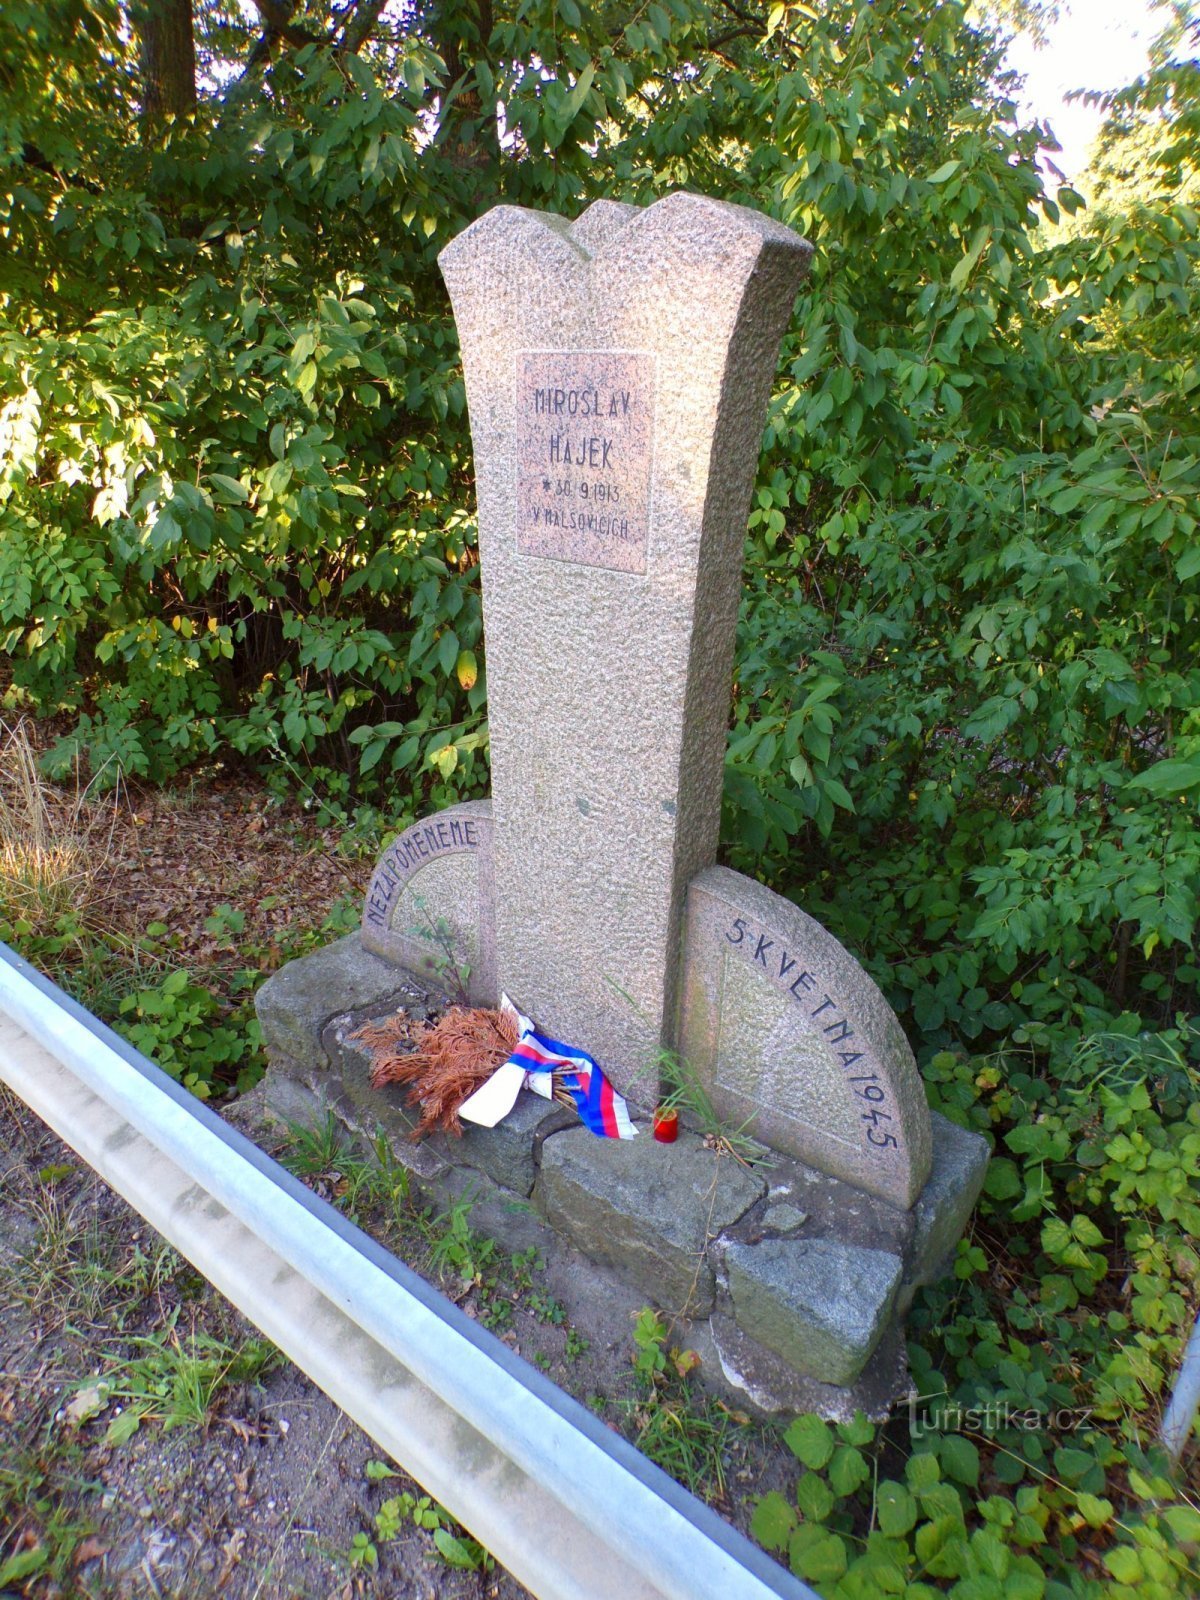 Miroslav Hájek の記念碑 (Dříteč、17.8.2022 年 XNUMX 月 XNUMX 日)